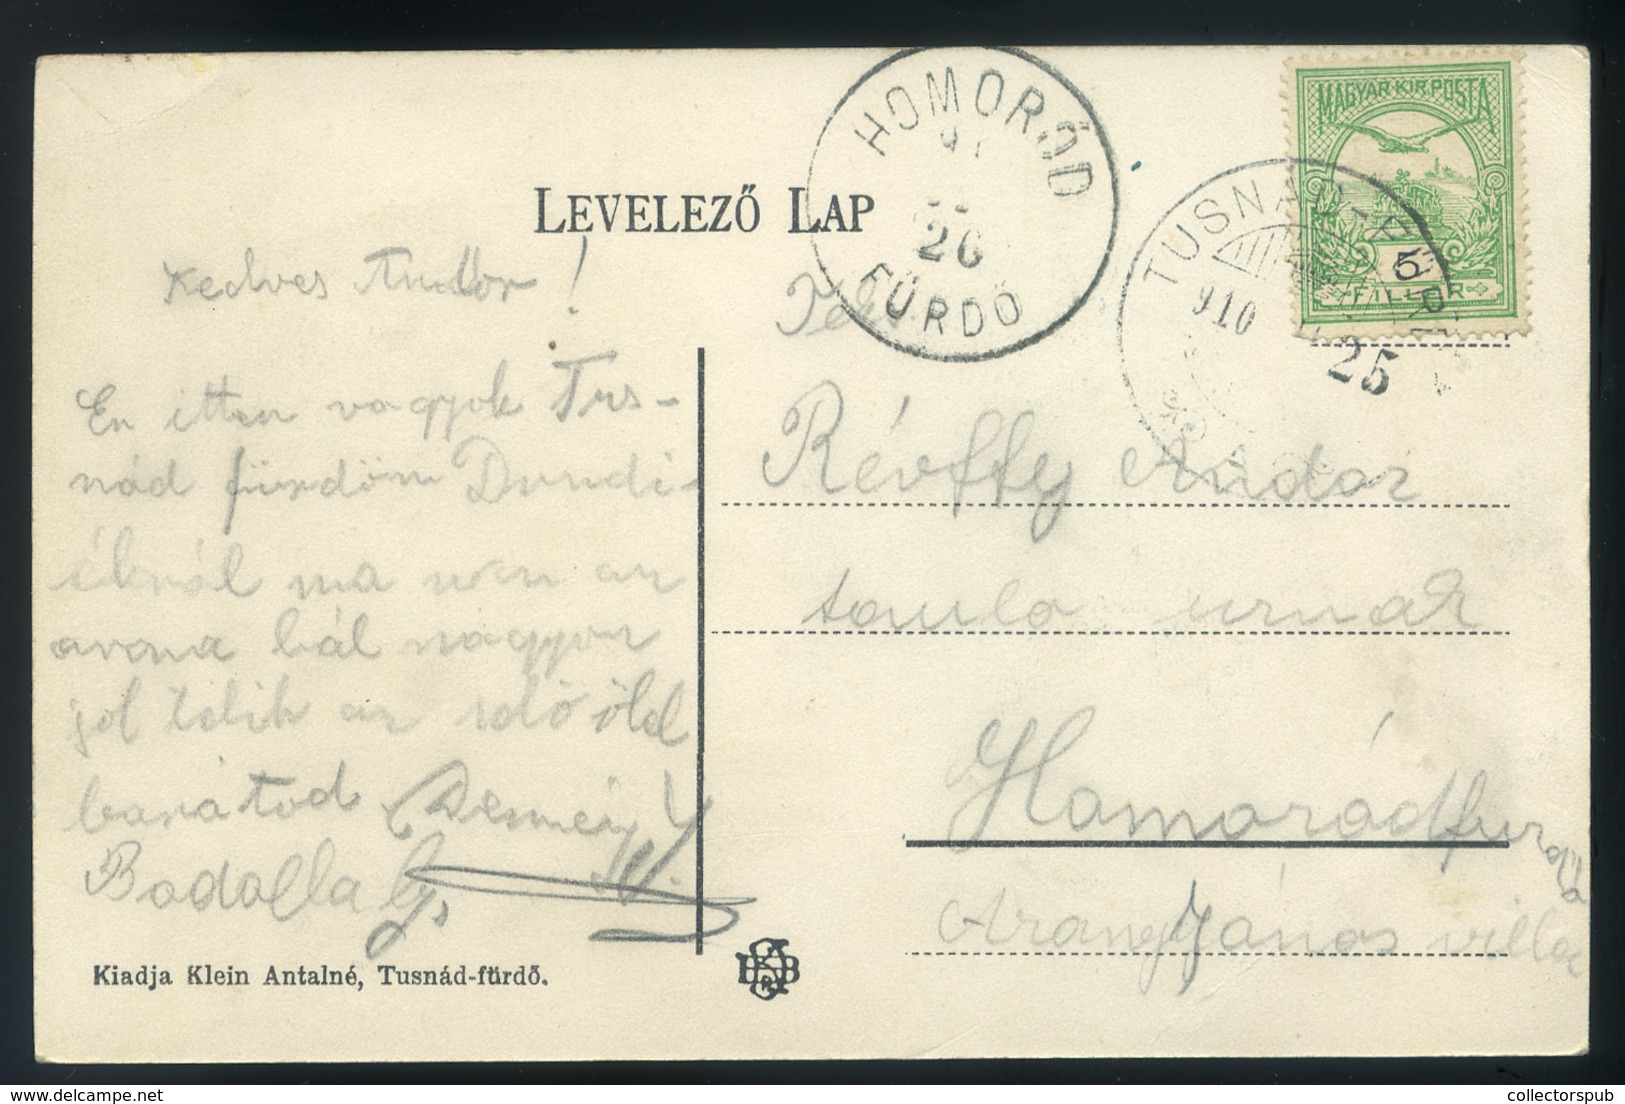 TUSNÁDFÜRDŐ 1910. Art Nouveu , Lepkés Képeslap / TUSNÁDFÜRDŐ 1910 Art Nouveau Butterfly Postcard - Hongarije